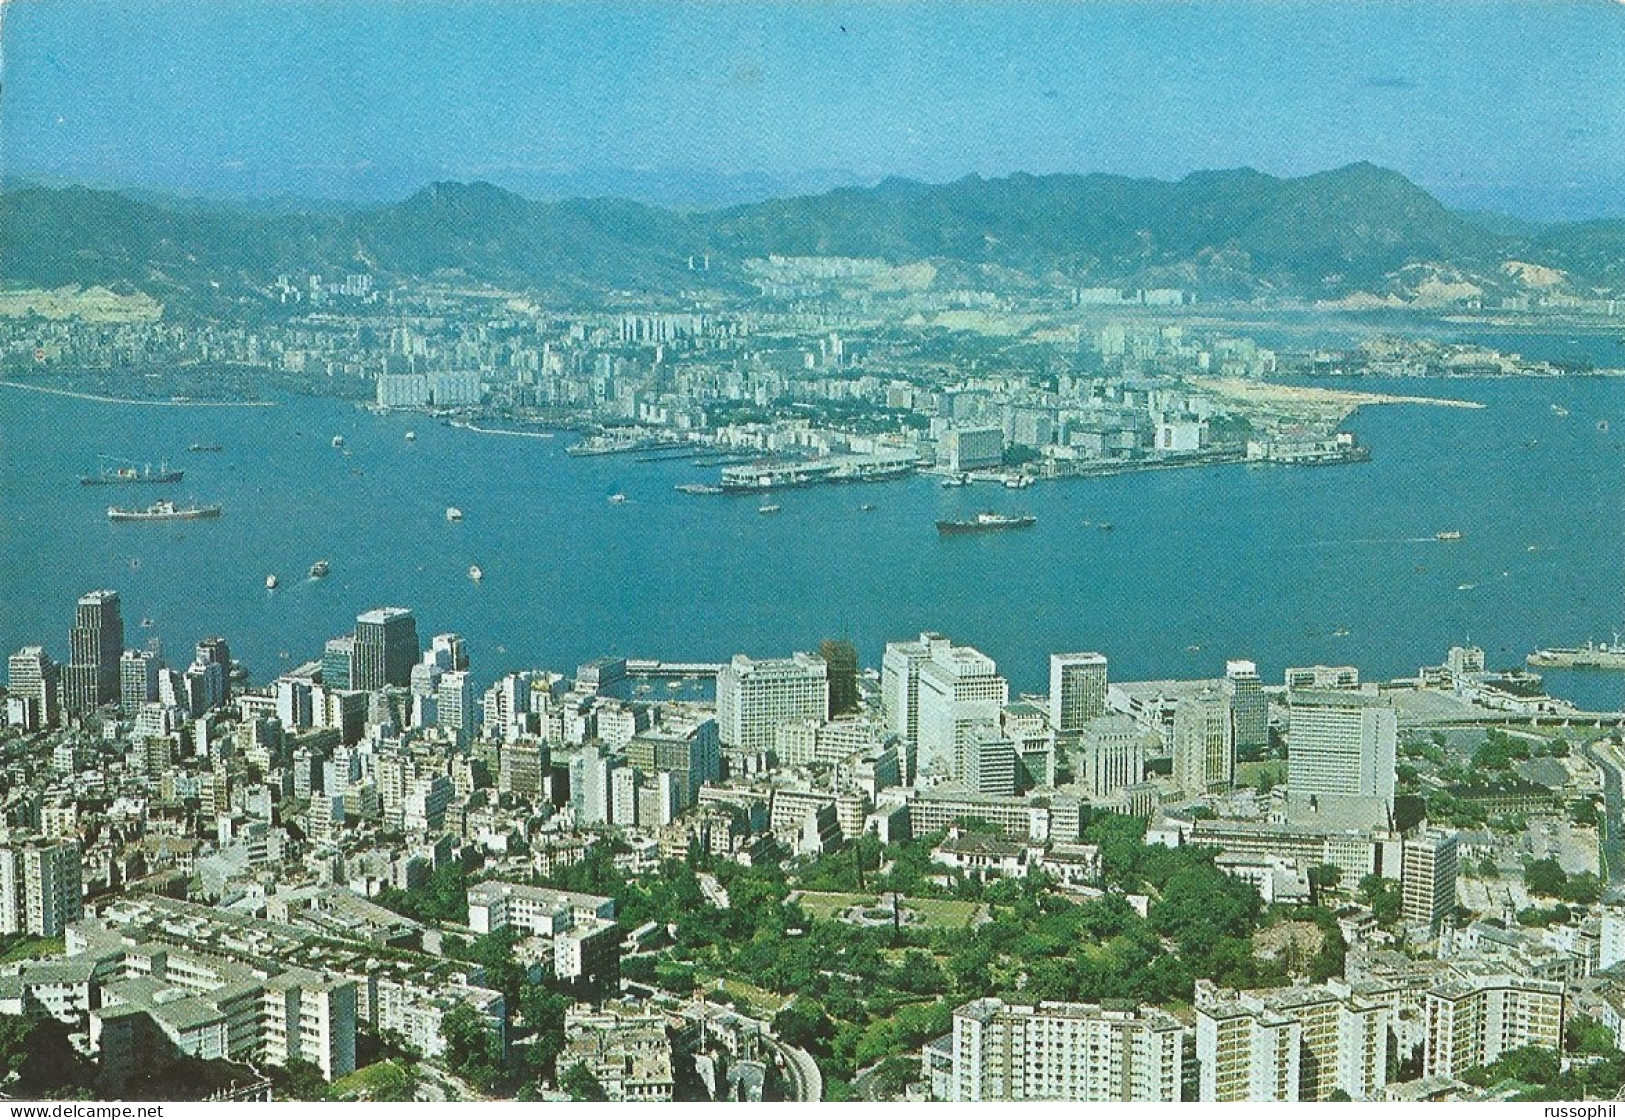 CHINA - HONG KONG - HONG KONG WITH A VIEW OF THE BOTANICAL GARDEN IN THE FOREGROUND - ED. SHECK WA TONG - 1968 - China (Hongkong)